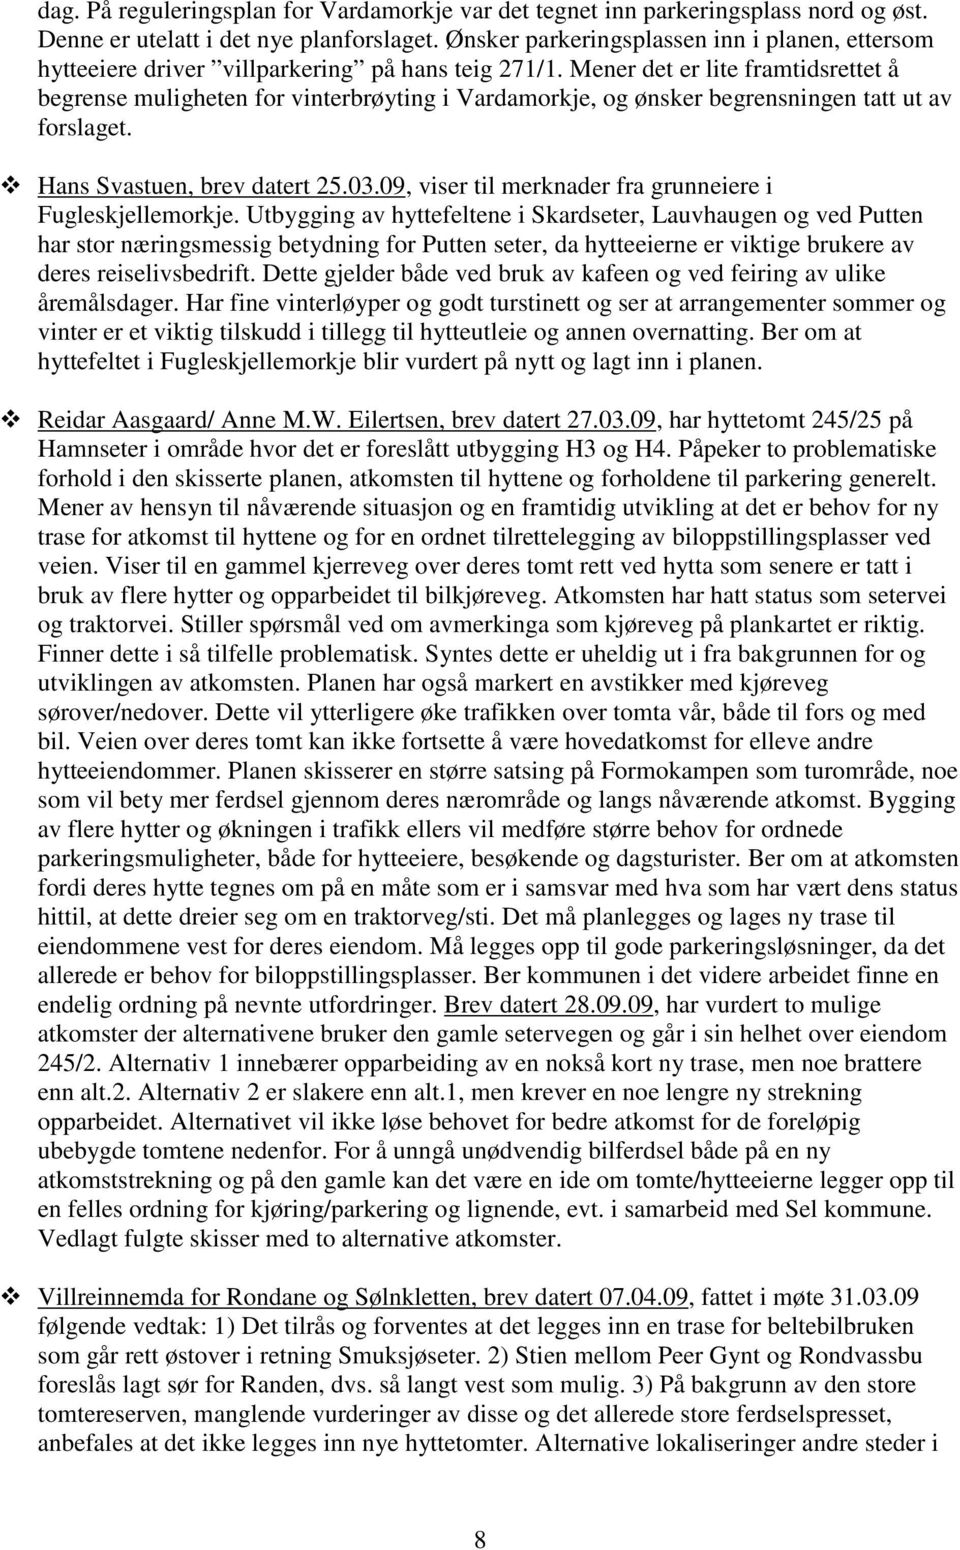 Mener det er lite framtidsrettet å begrense muligheten for vinterbrøyting i Vardamorkje, og ønsker begrensningen tatt ut av forslaget. Hans Svastuen, brev datert 25.03.